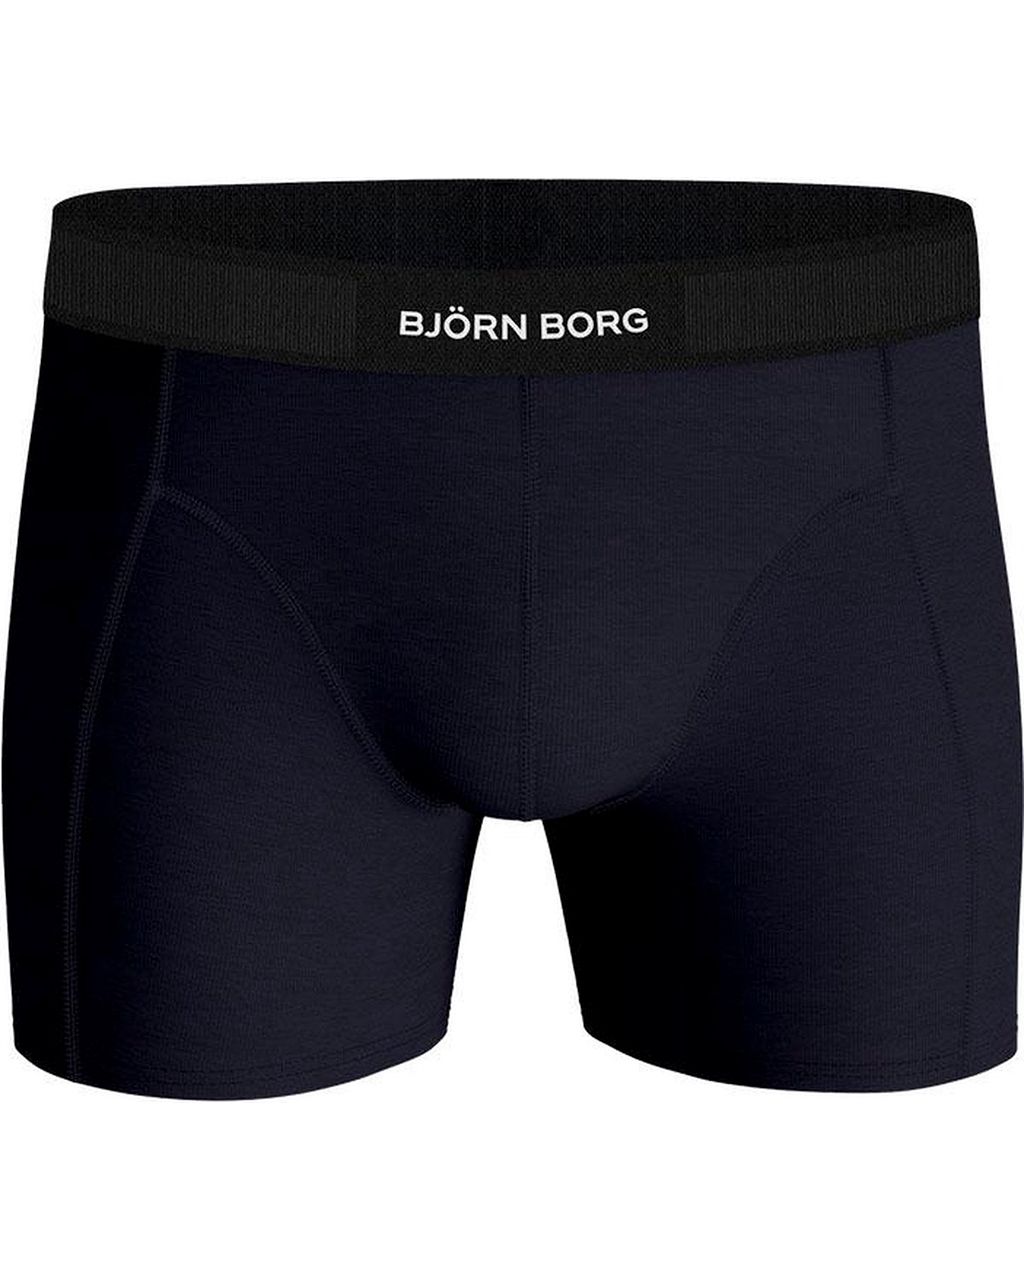 Björn Borg Boxershort 2-pack Donker blauw 080048-001-L